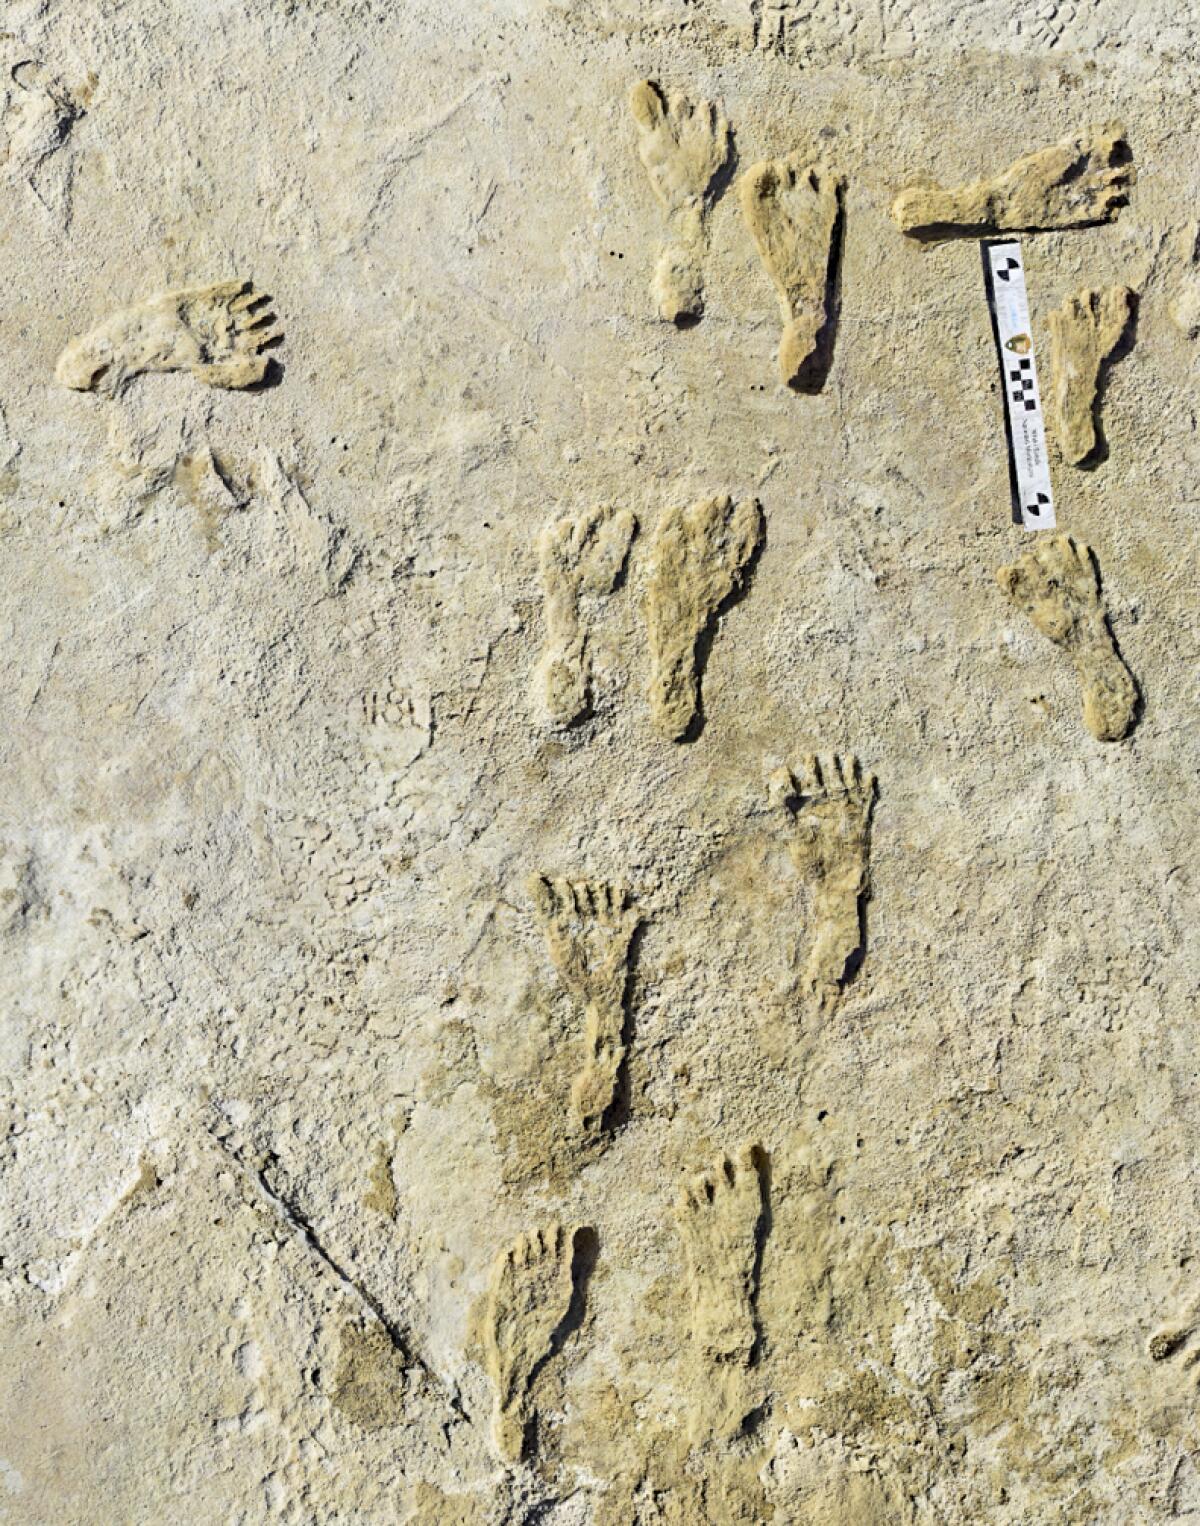 Hallan huellas humanas de hace 23,000 años en Nuevo México